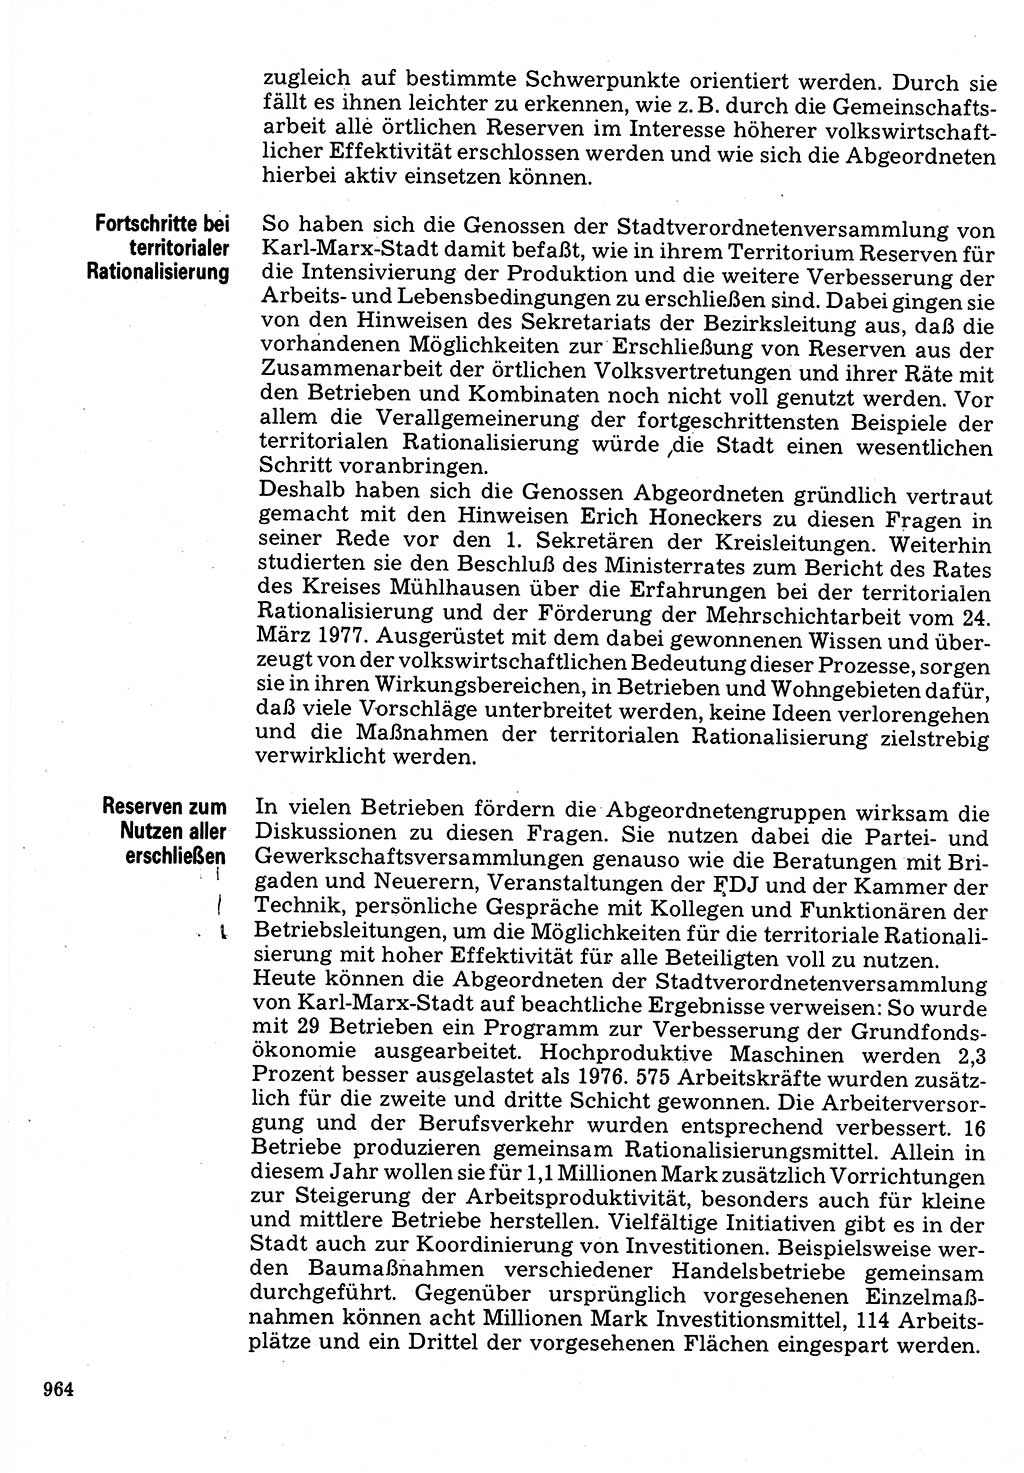 Neuer Weg (NW), Organ des Zentralkomitees (ZK) der SED (Sozialistische Einheitspartei Deutschlands) für Fragen des Parteilebens, 32. Jahrgang [Deutsche Demokratische Republik (DDR)] 1977, Seite 964 (NW ZK SED DDR 1977, S. 964)